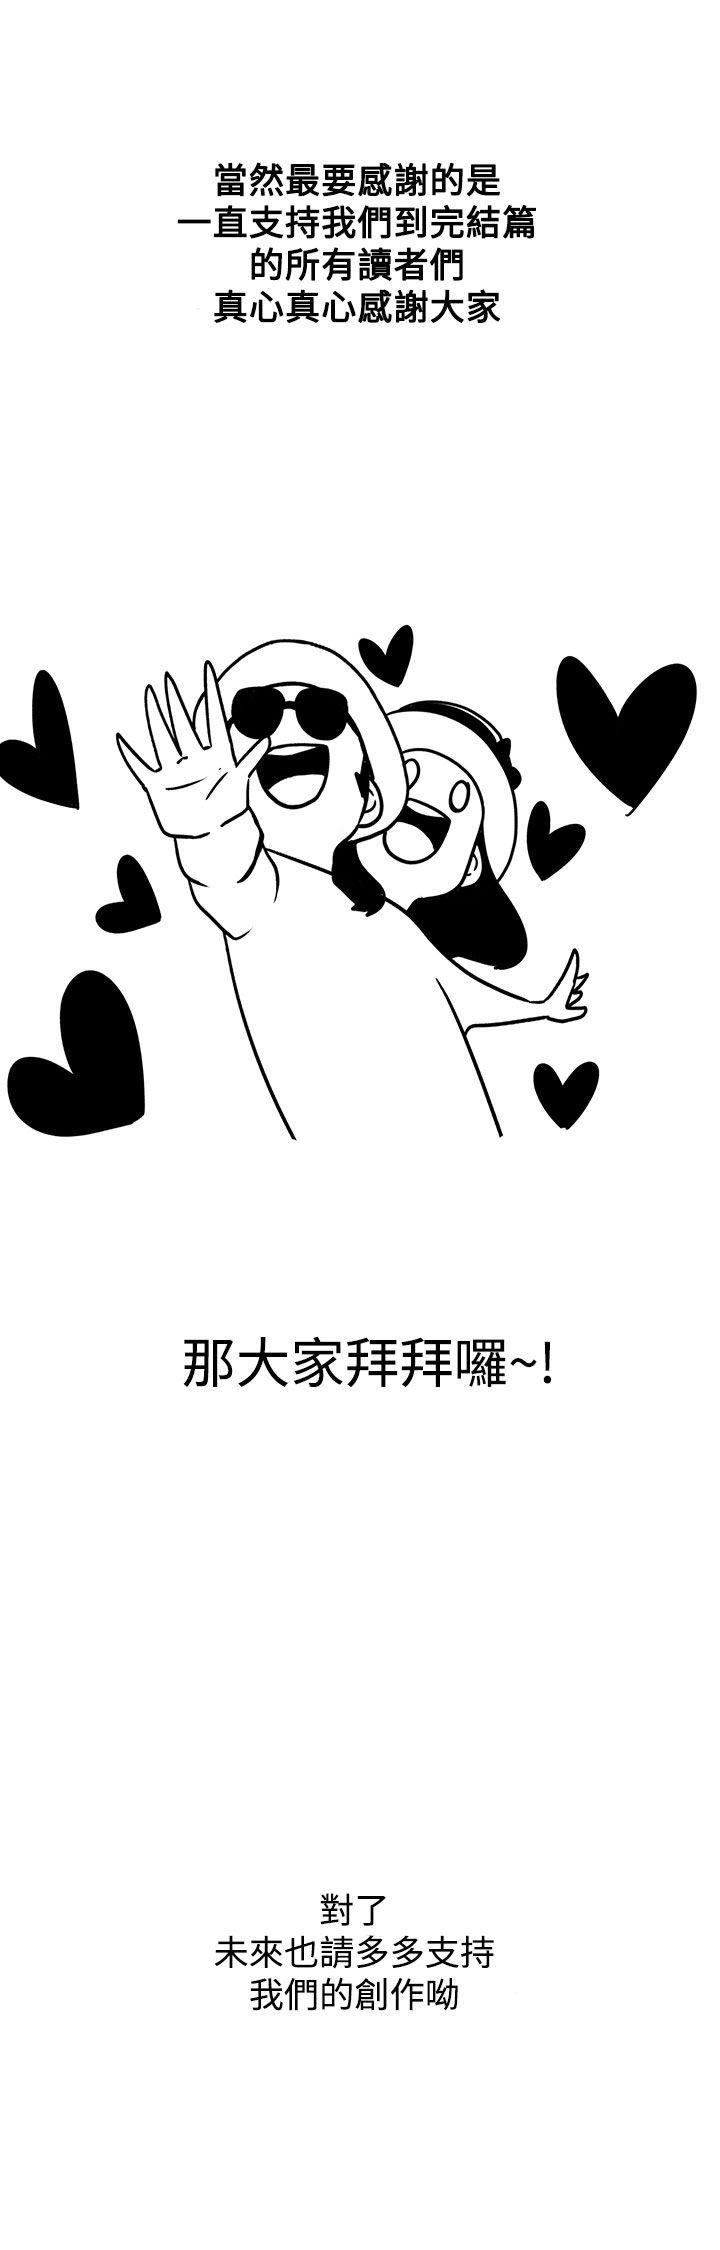 韩国污漫画 LOVE 愛的導航G 后记 5